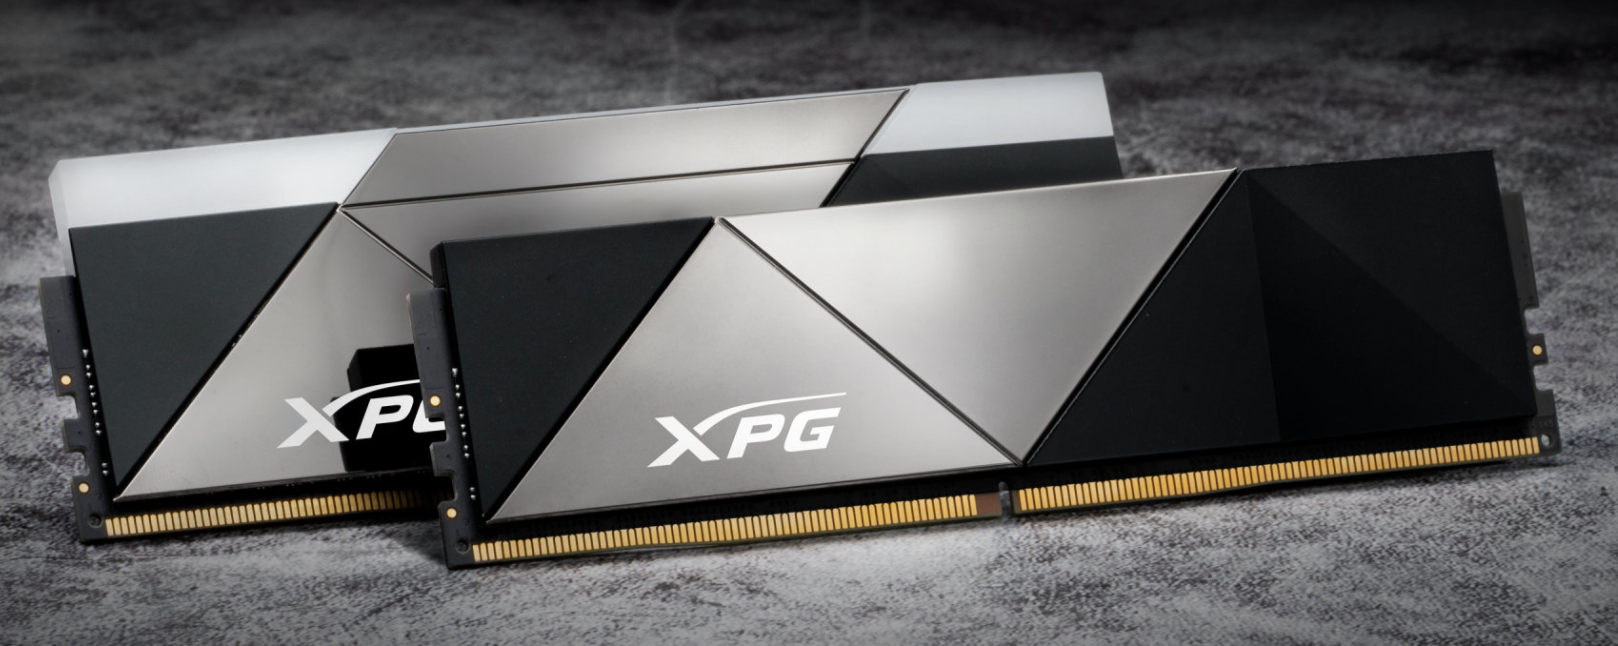 XPG - Memórias DDR5 Caster